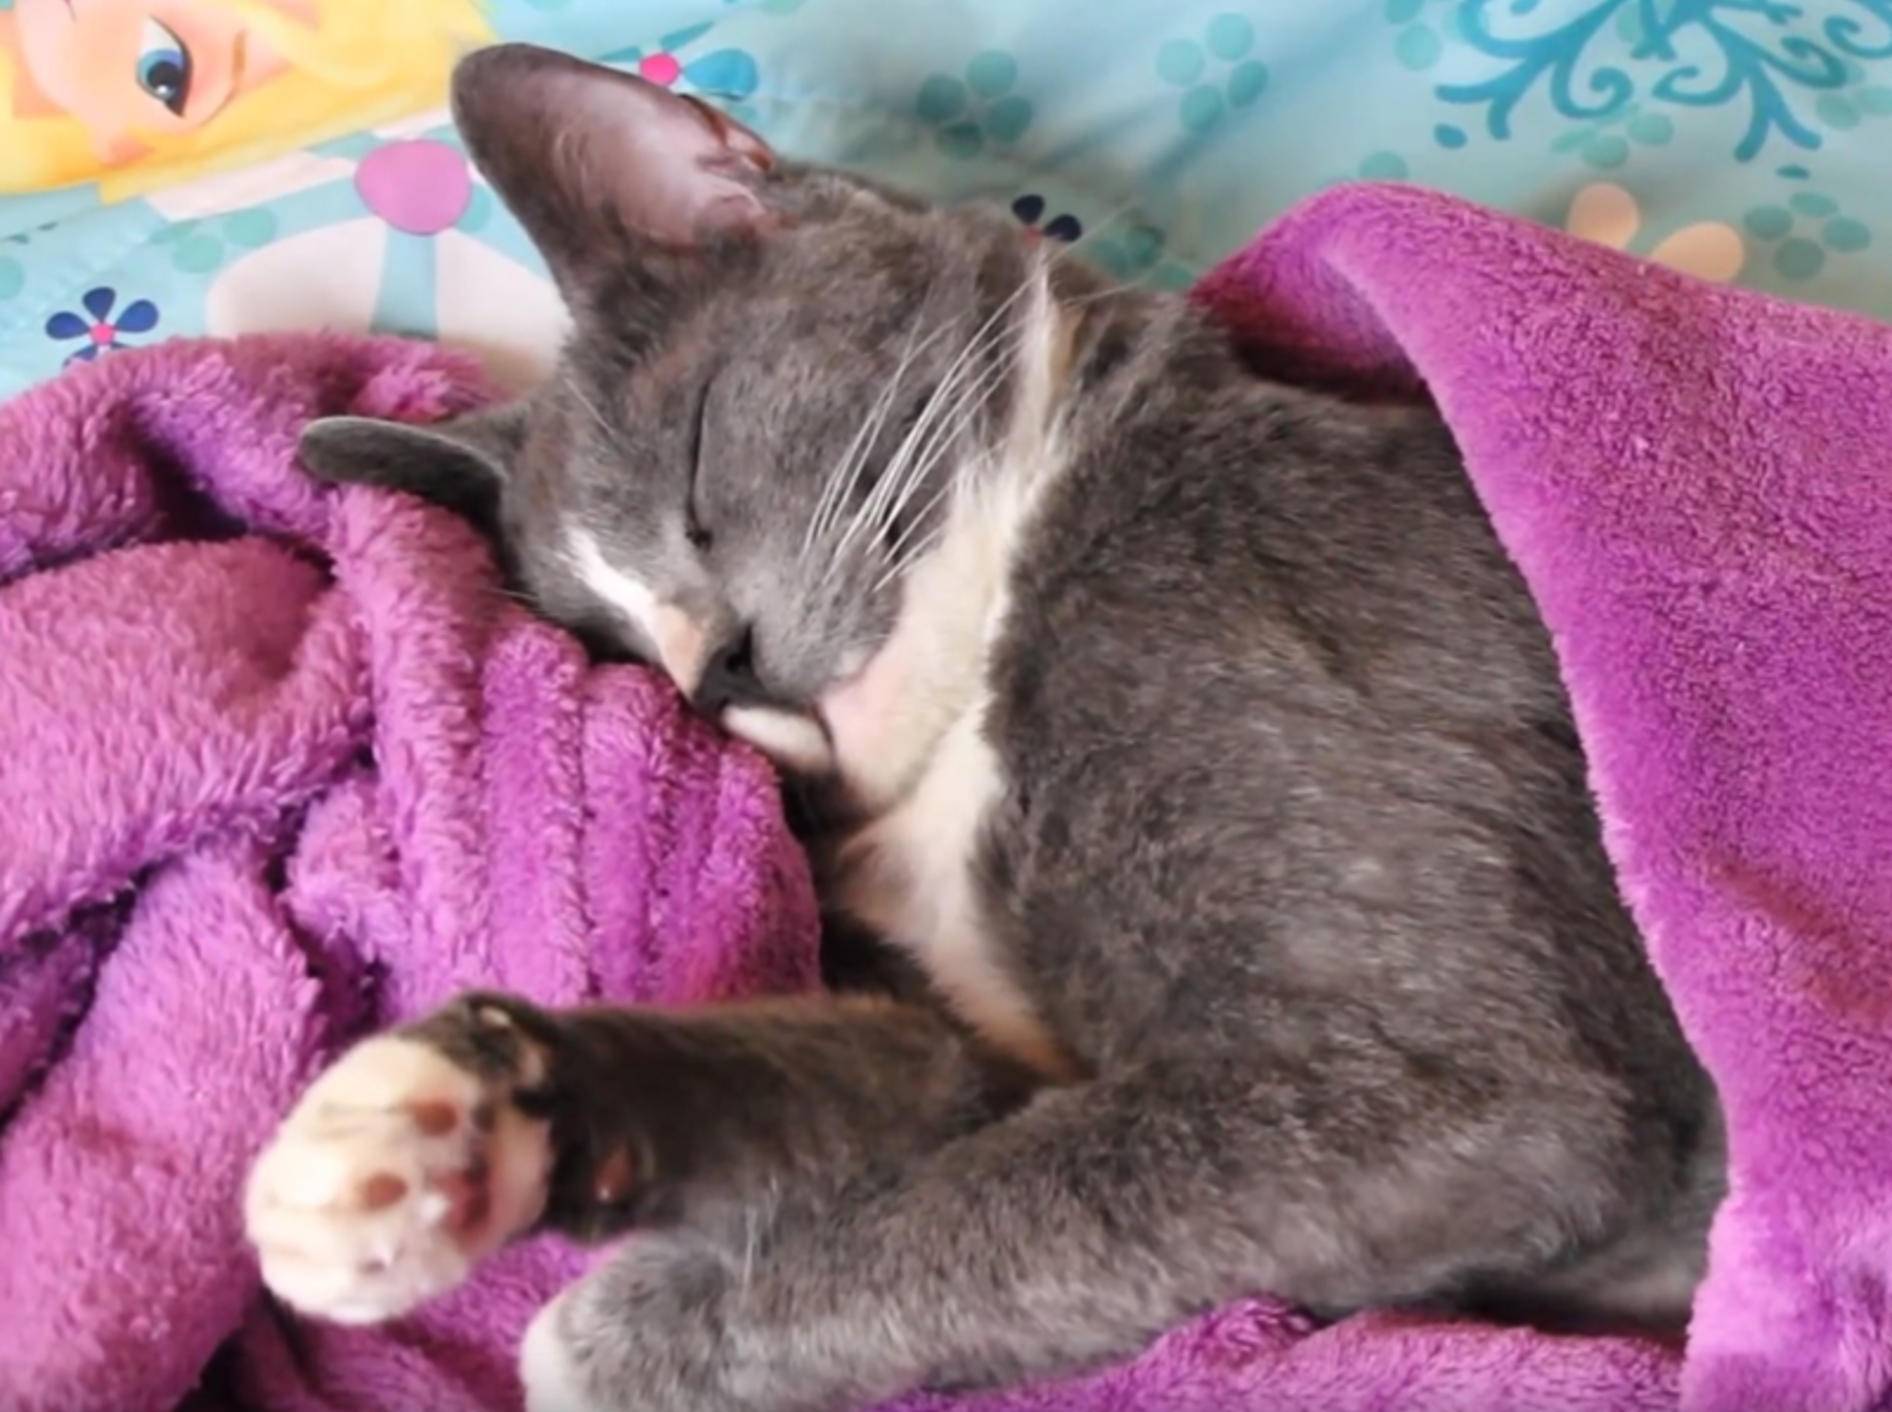 Süßer Schlummer: Entspannte Katze lächelt im Schlaf – YouTube / Kitty Cat Bliss